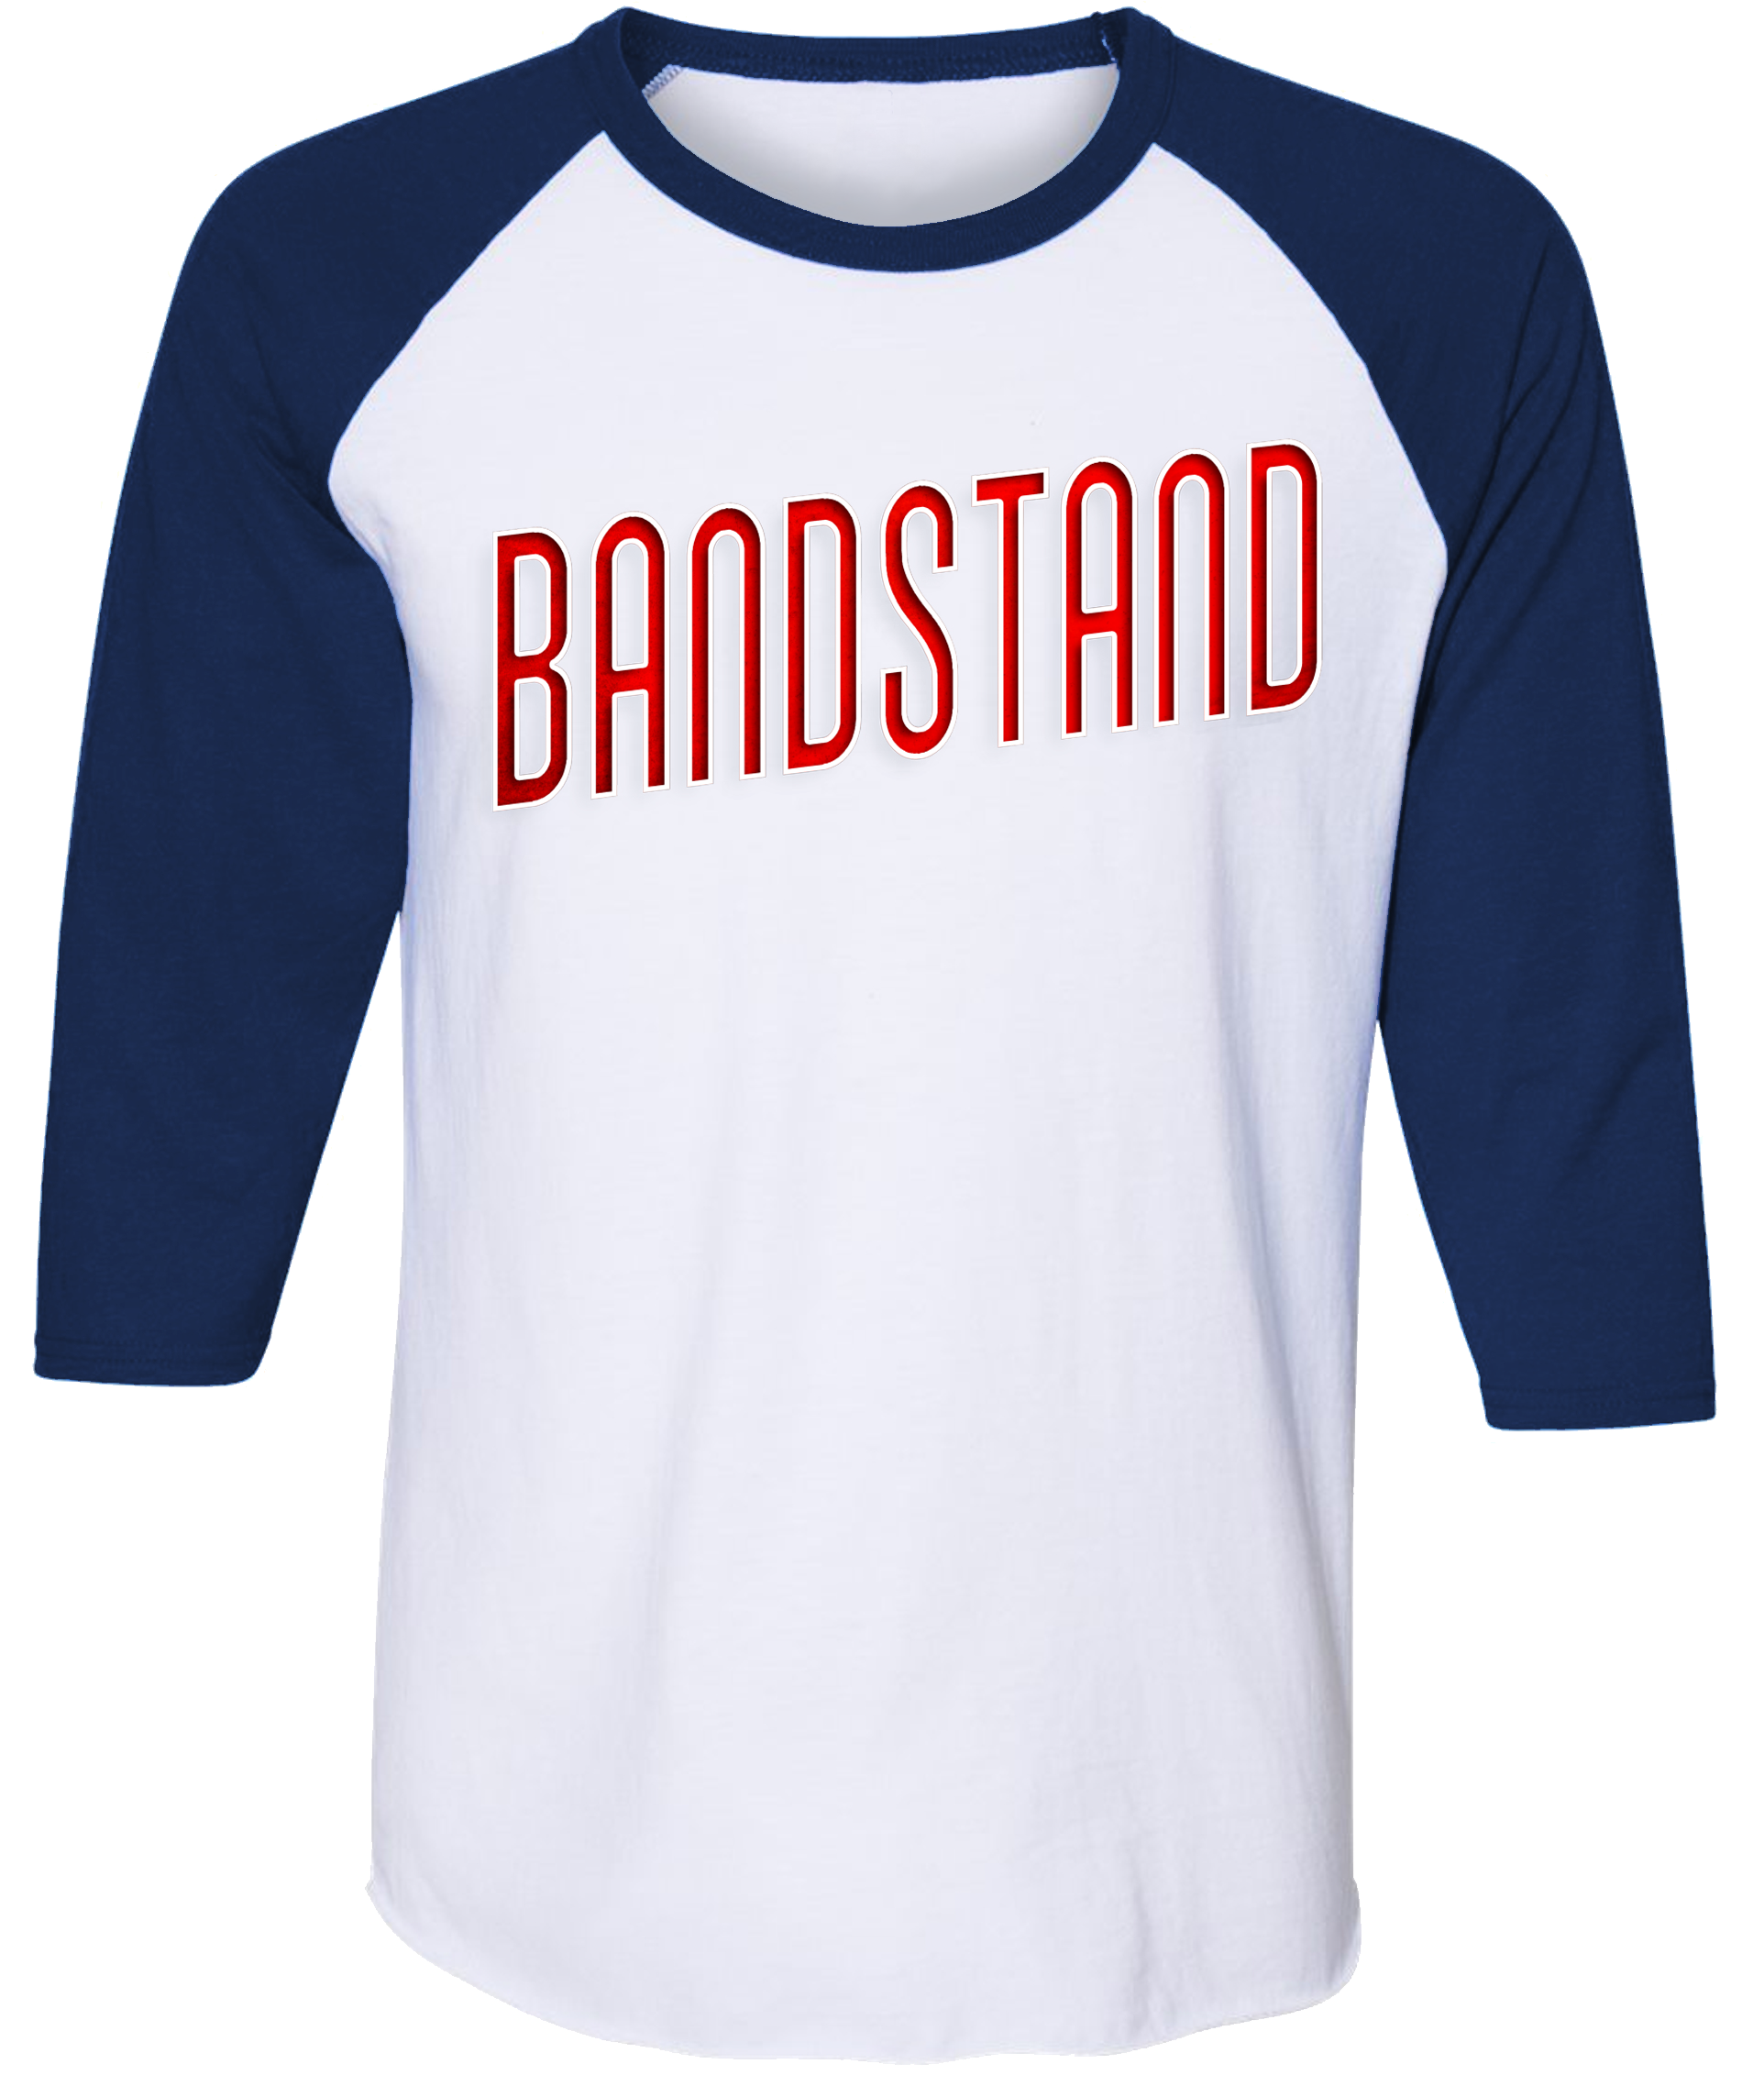 Bandstand First National Tour Raglan T-Shirt